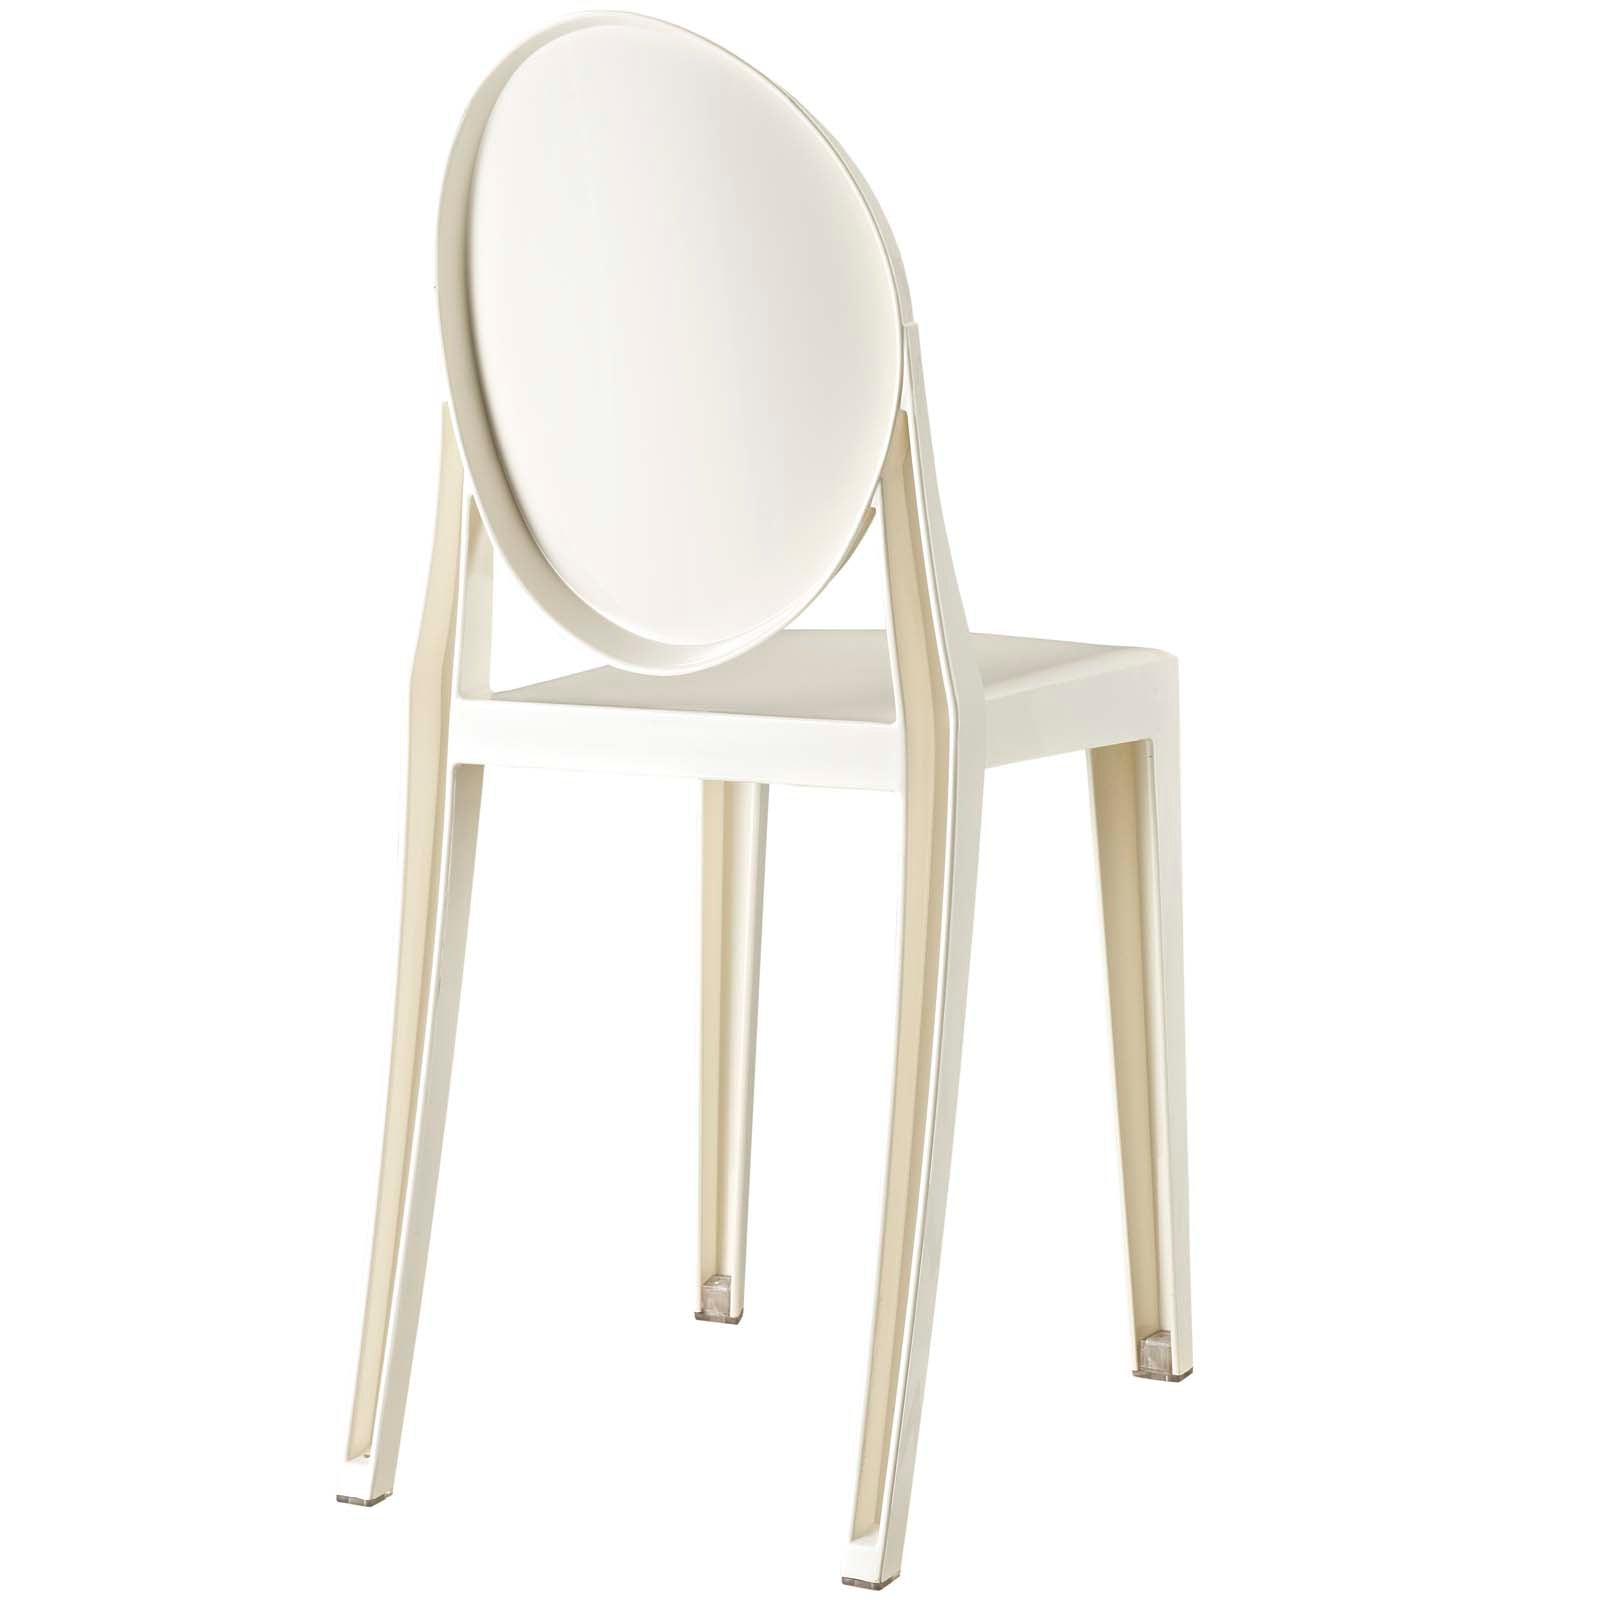 Casper Dining Side Chair - White